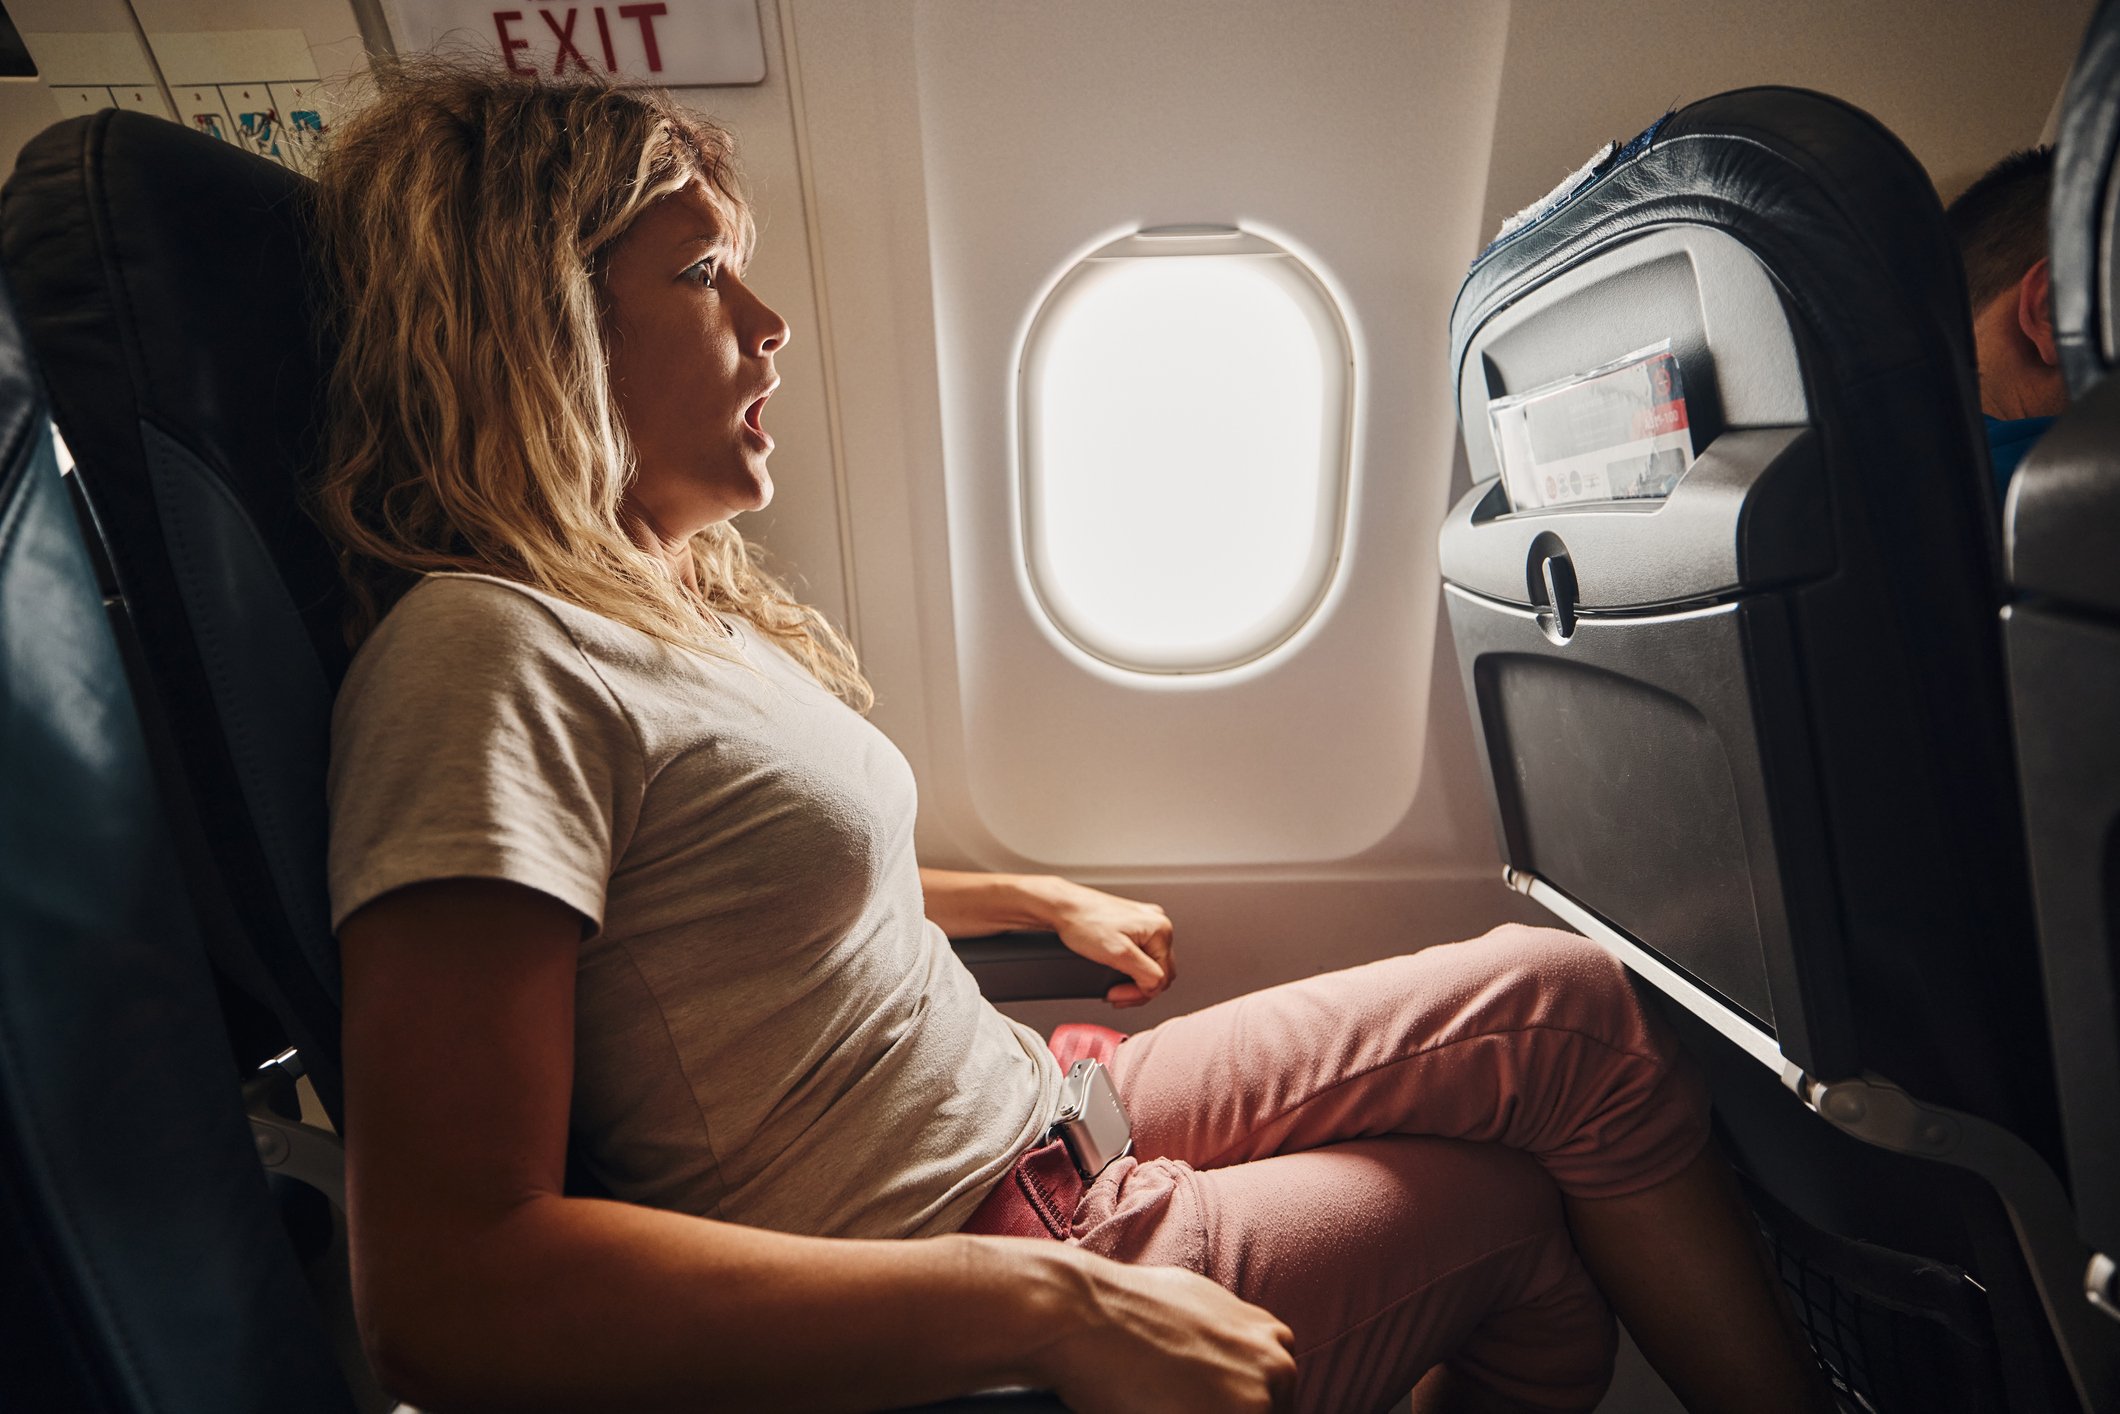 Mujer sujetada al asiento de un avión con cara de susto.